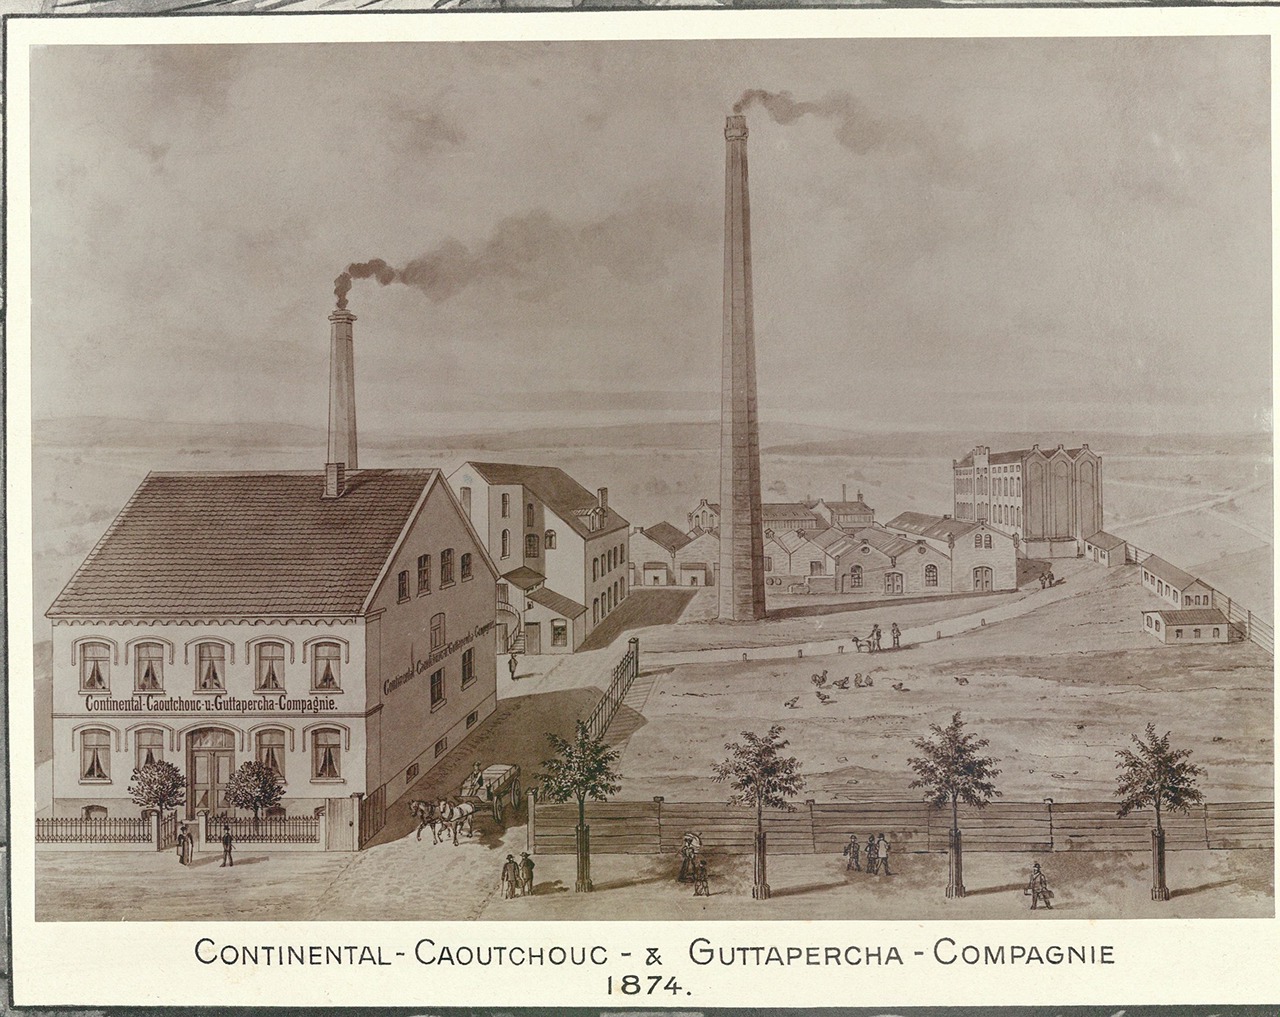 Primera fábrica de Continental